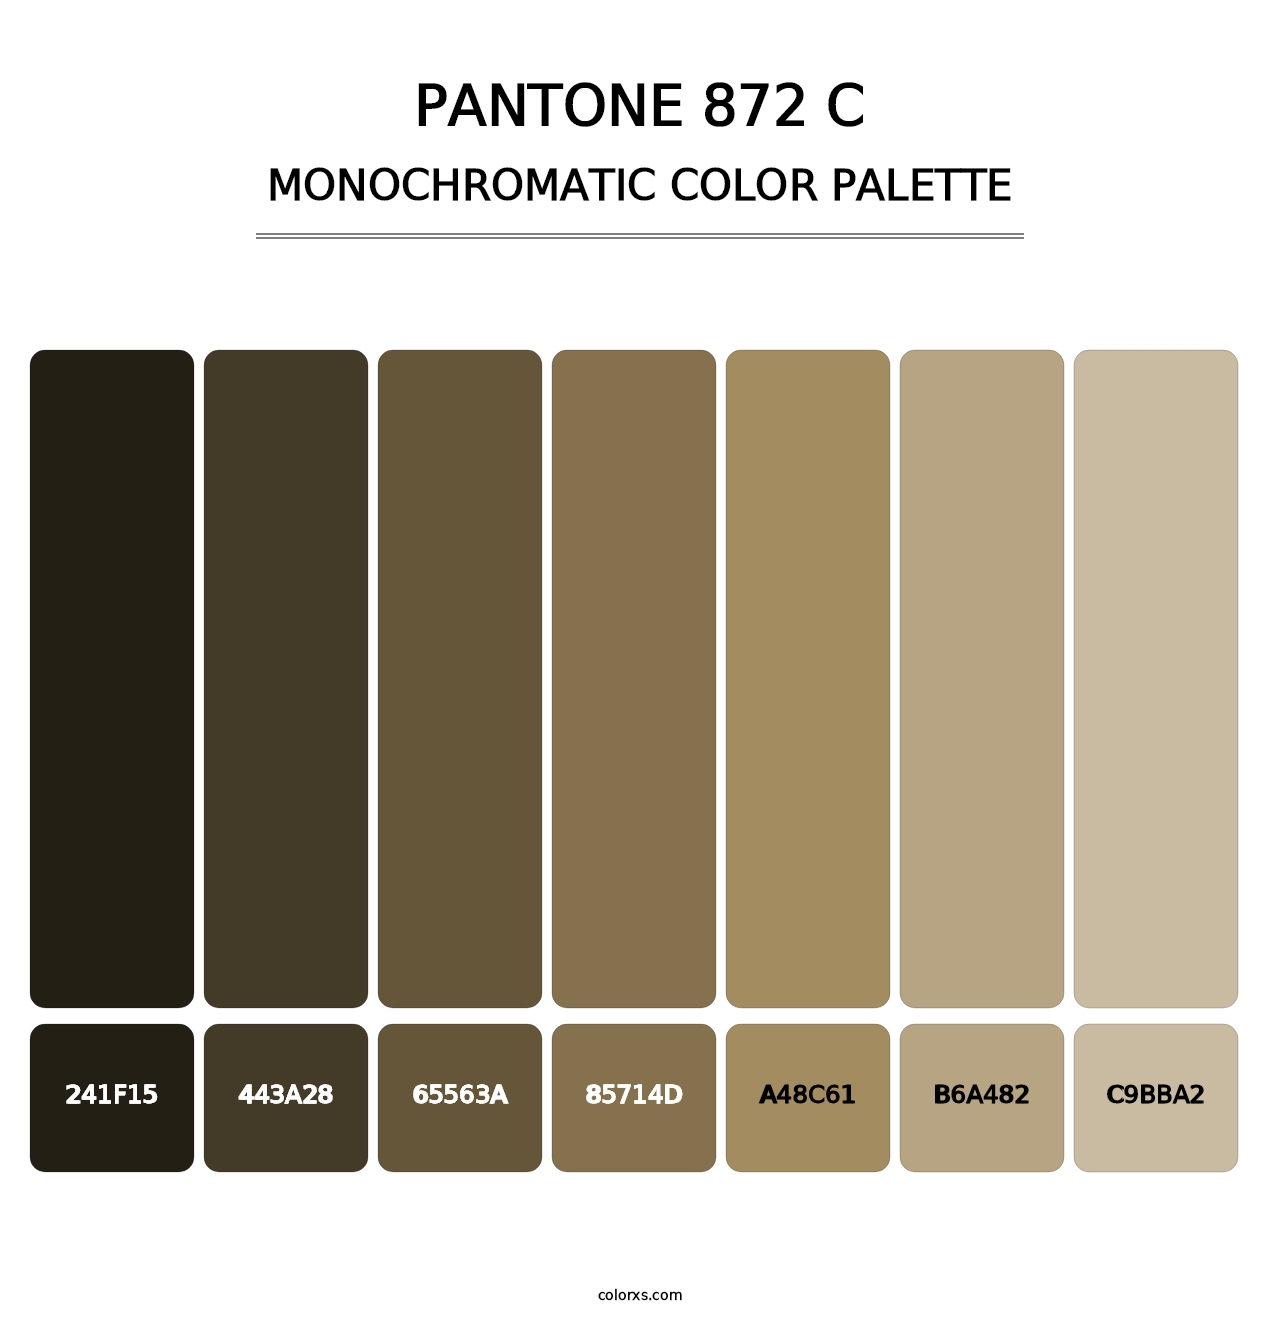 PANTONE 872 C - Monochromatic Color Palette